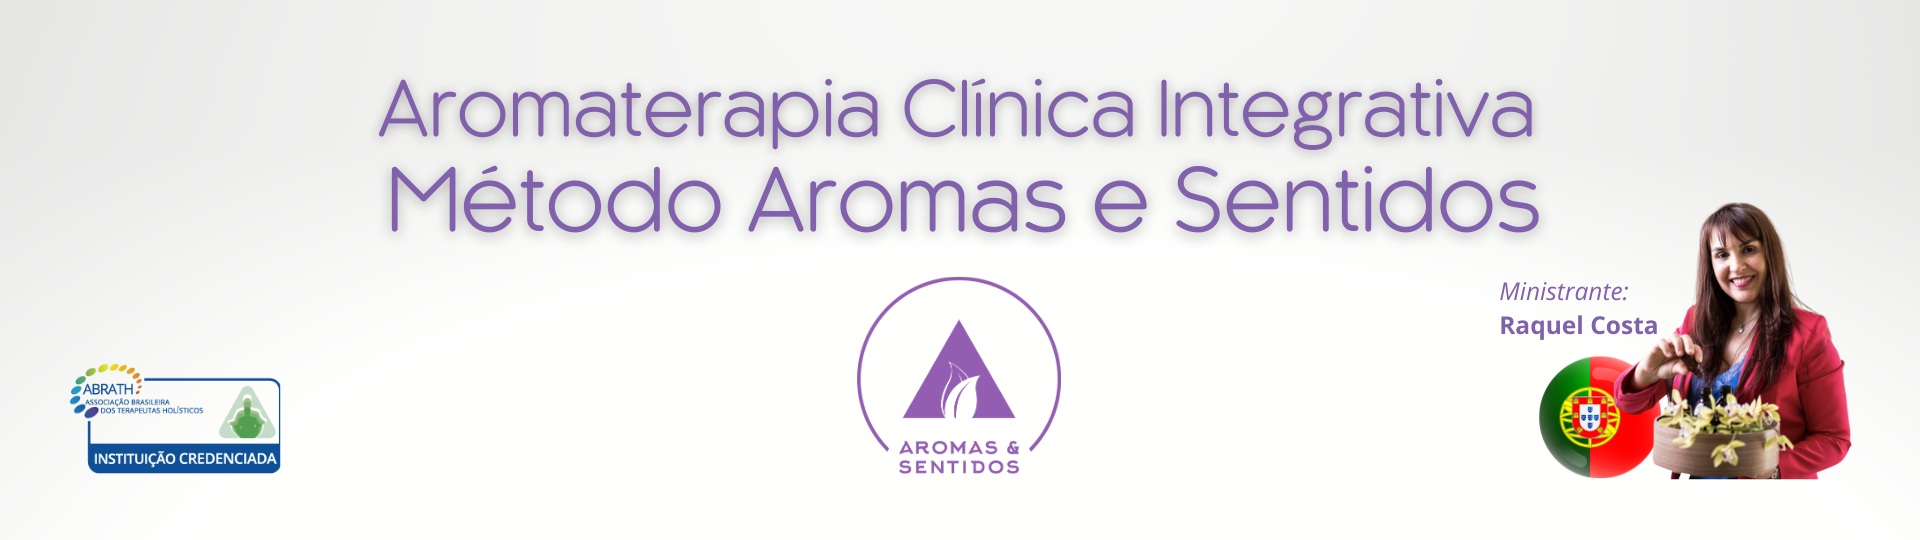 Formação Internacional em Aromaterapia Clínica Integrativa - Método Raquel Costa